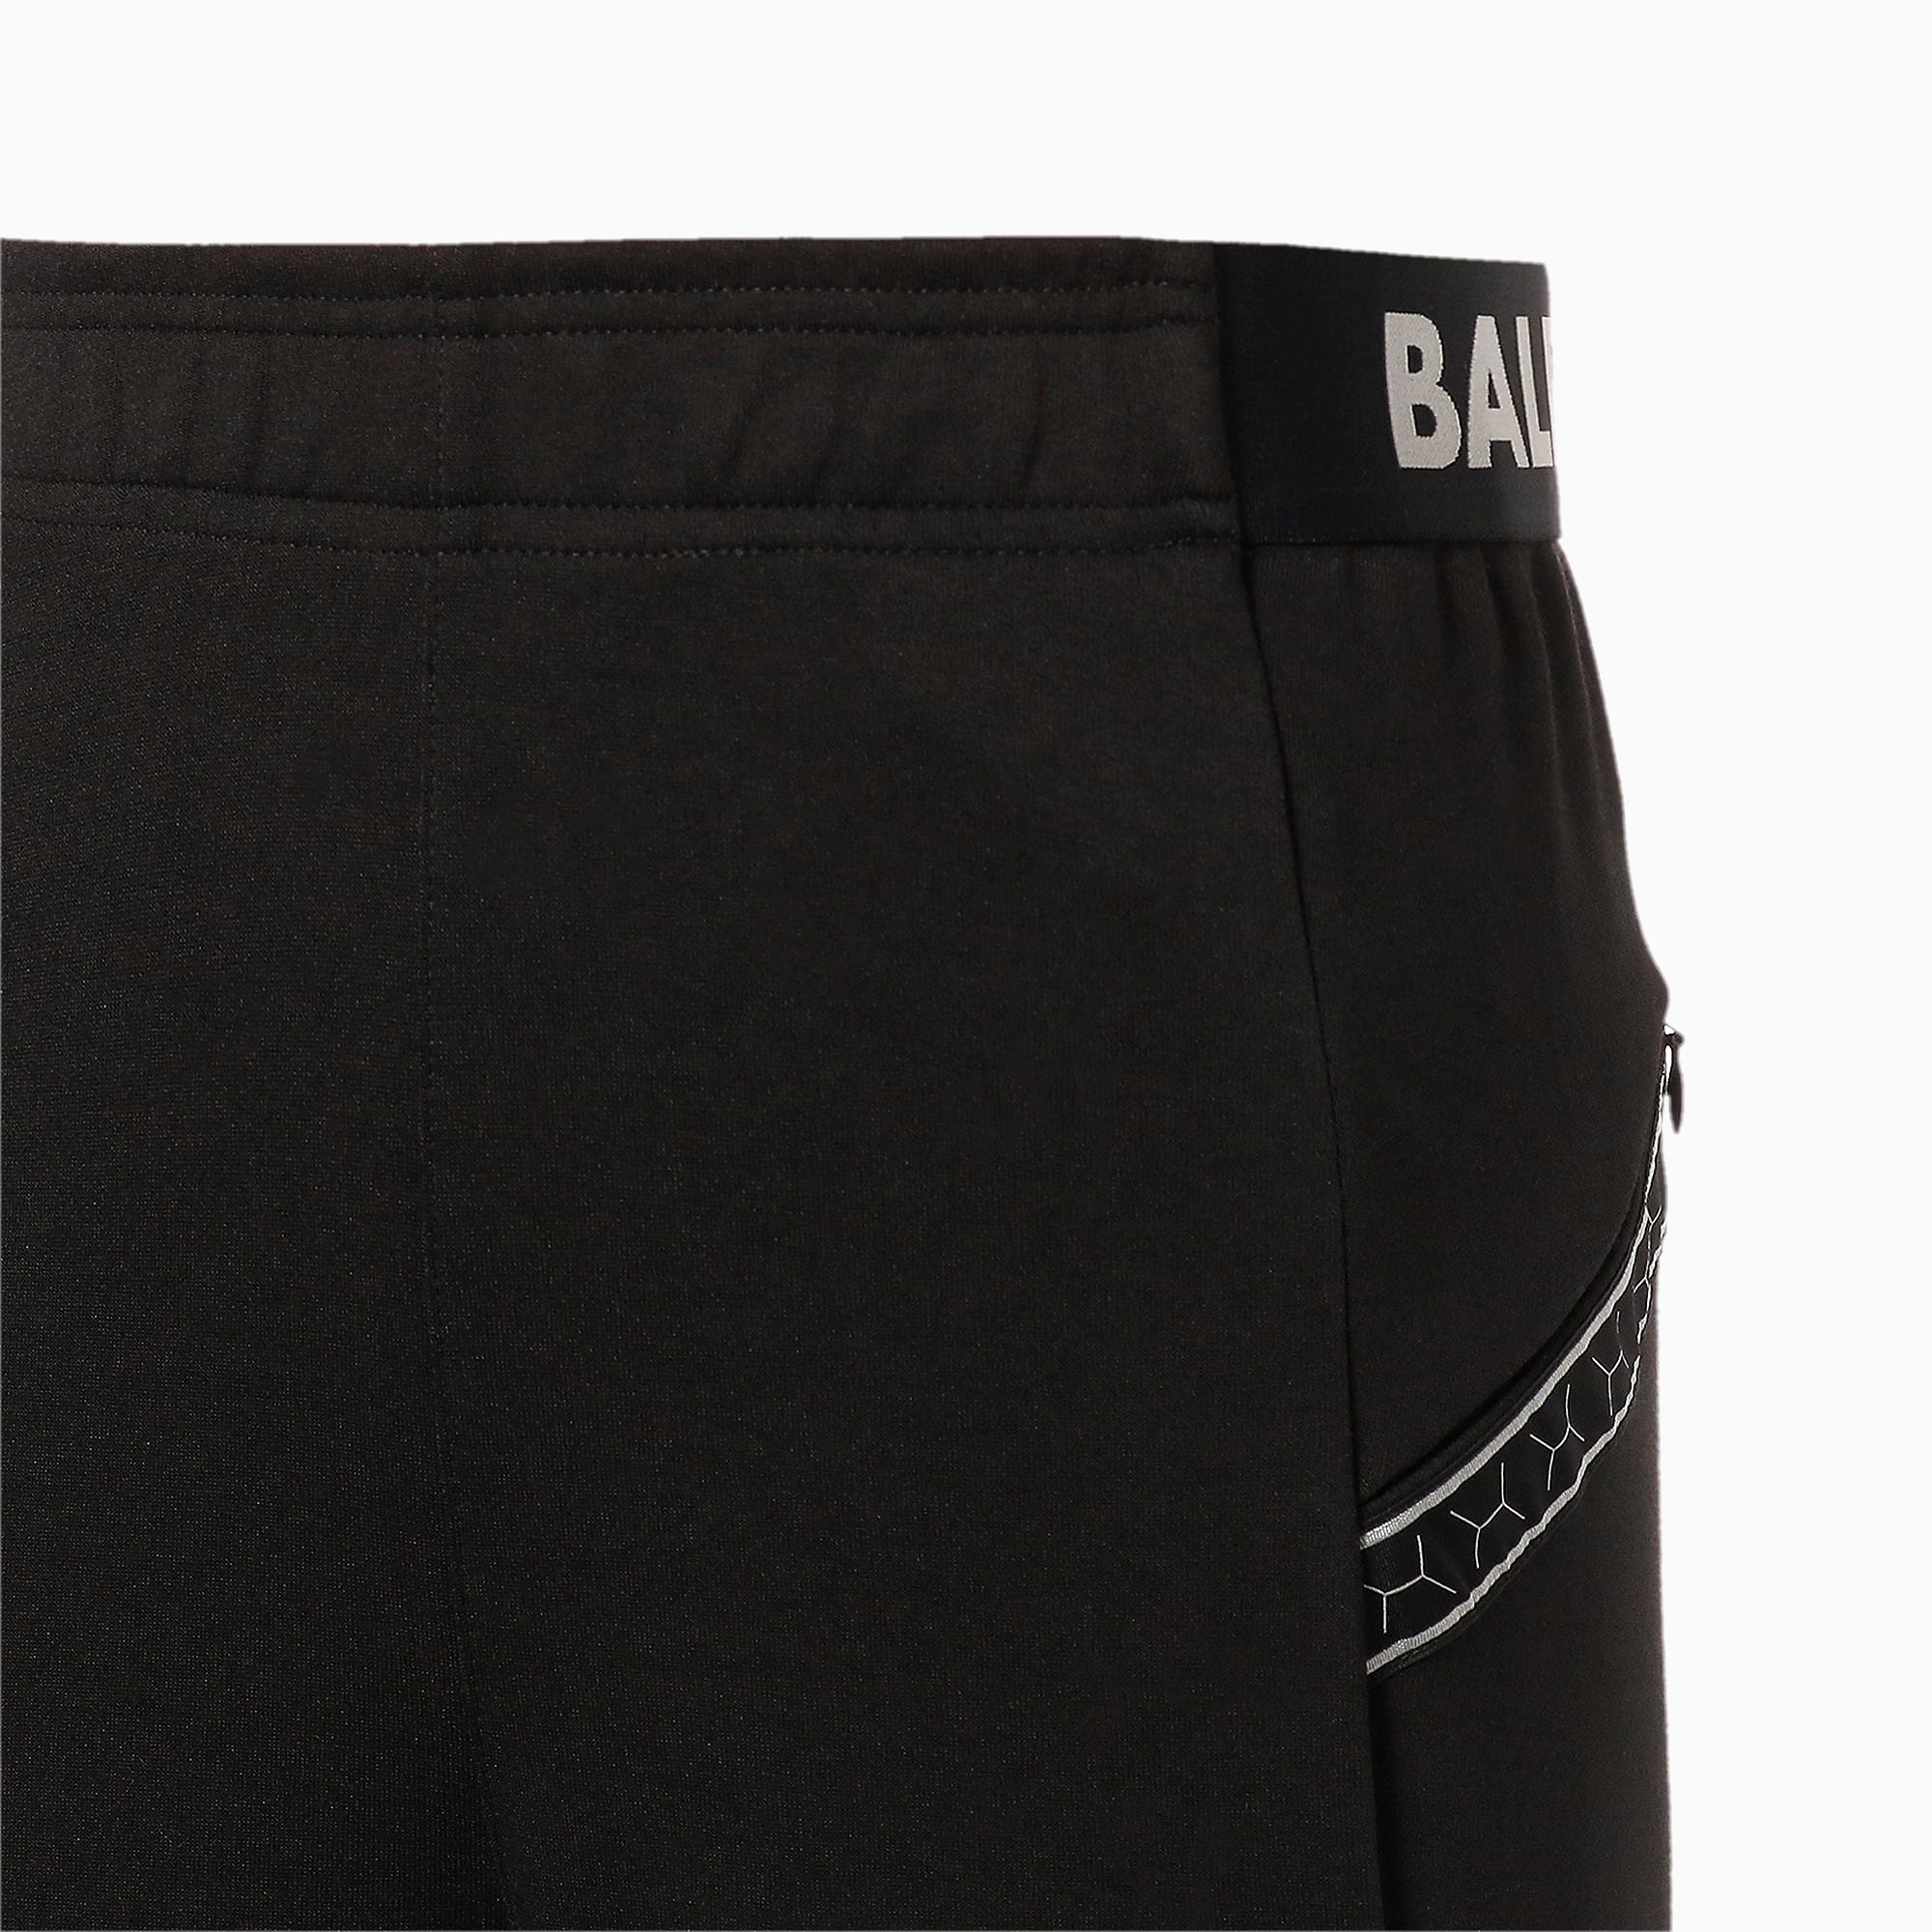 人気ショップが最安値挑戦 Balr サッカー選手愛用ブランド パンツ Relaxed Fit Shorts 高速配送 Grupovegadiaz Com